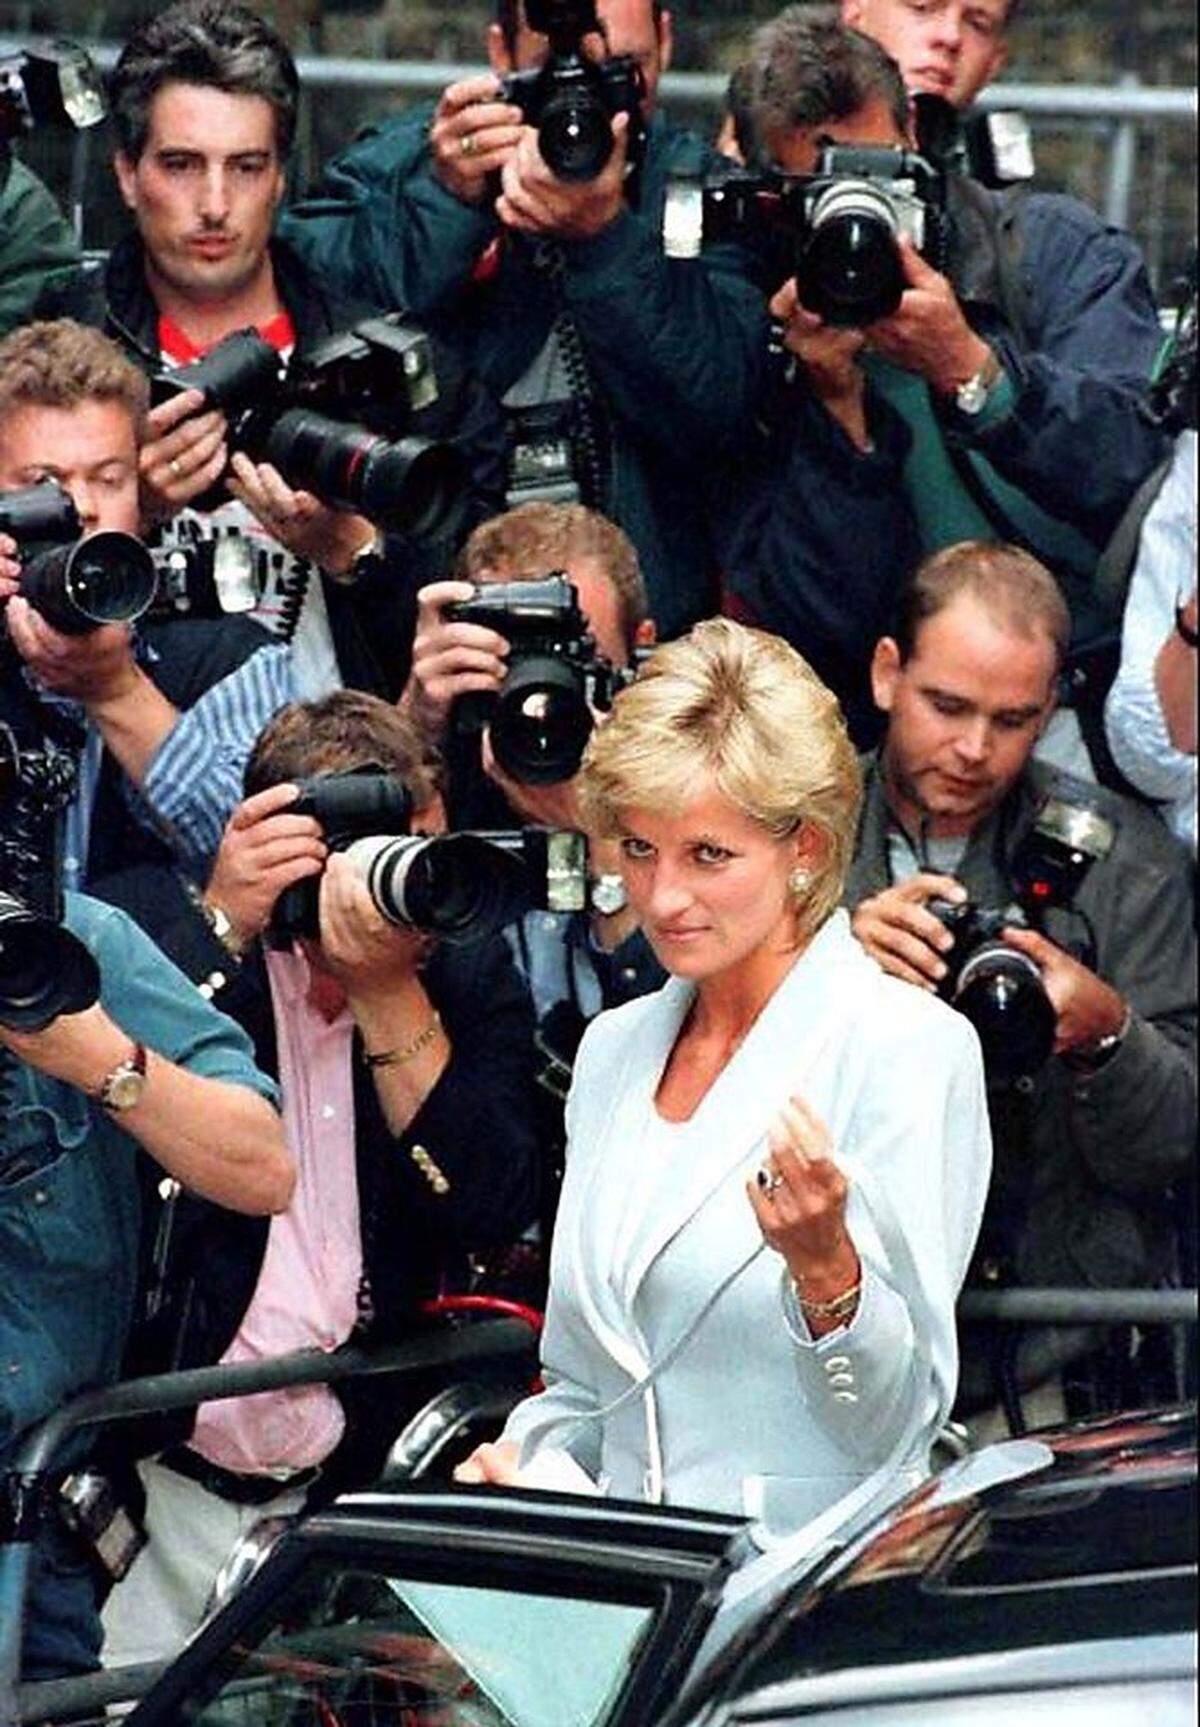 Lady Diana: von der Märchenprinzessin zum Weltstar. So geht die Erzählung heute, und die Geschichte der britischen Adeligen samt ihrem tragischen Tod in Paris dient als Lehrstück über Intrigen, Machtkämpfe und Boulevardjournalismus am britischen Königshof der 1980er- und 1990er-Jahre.